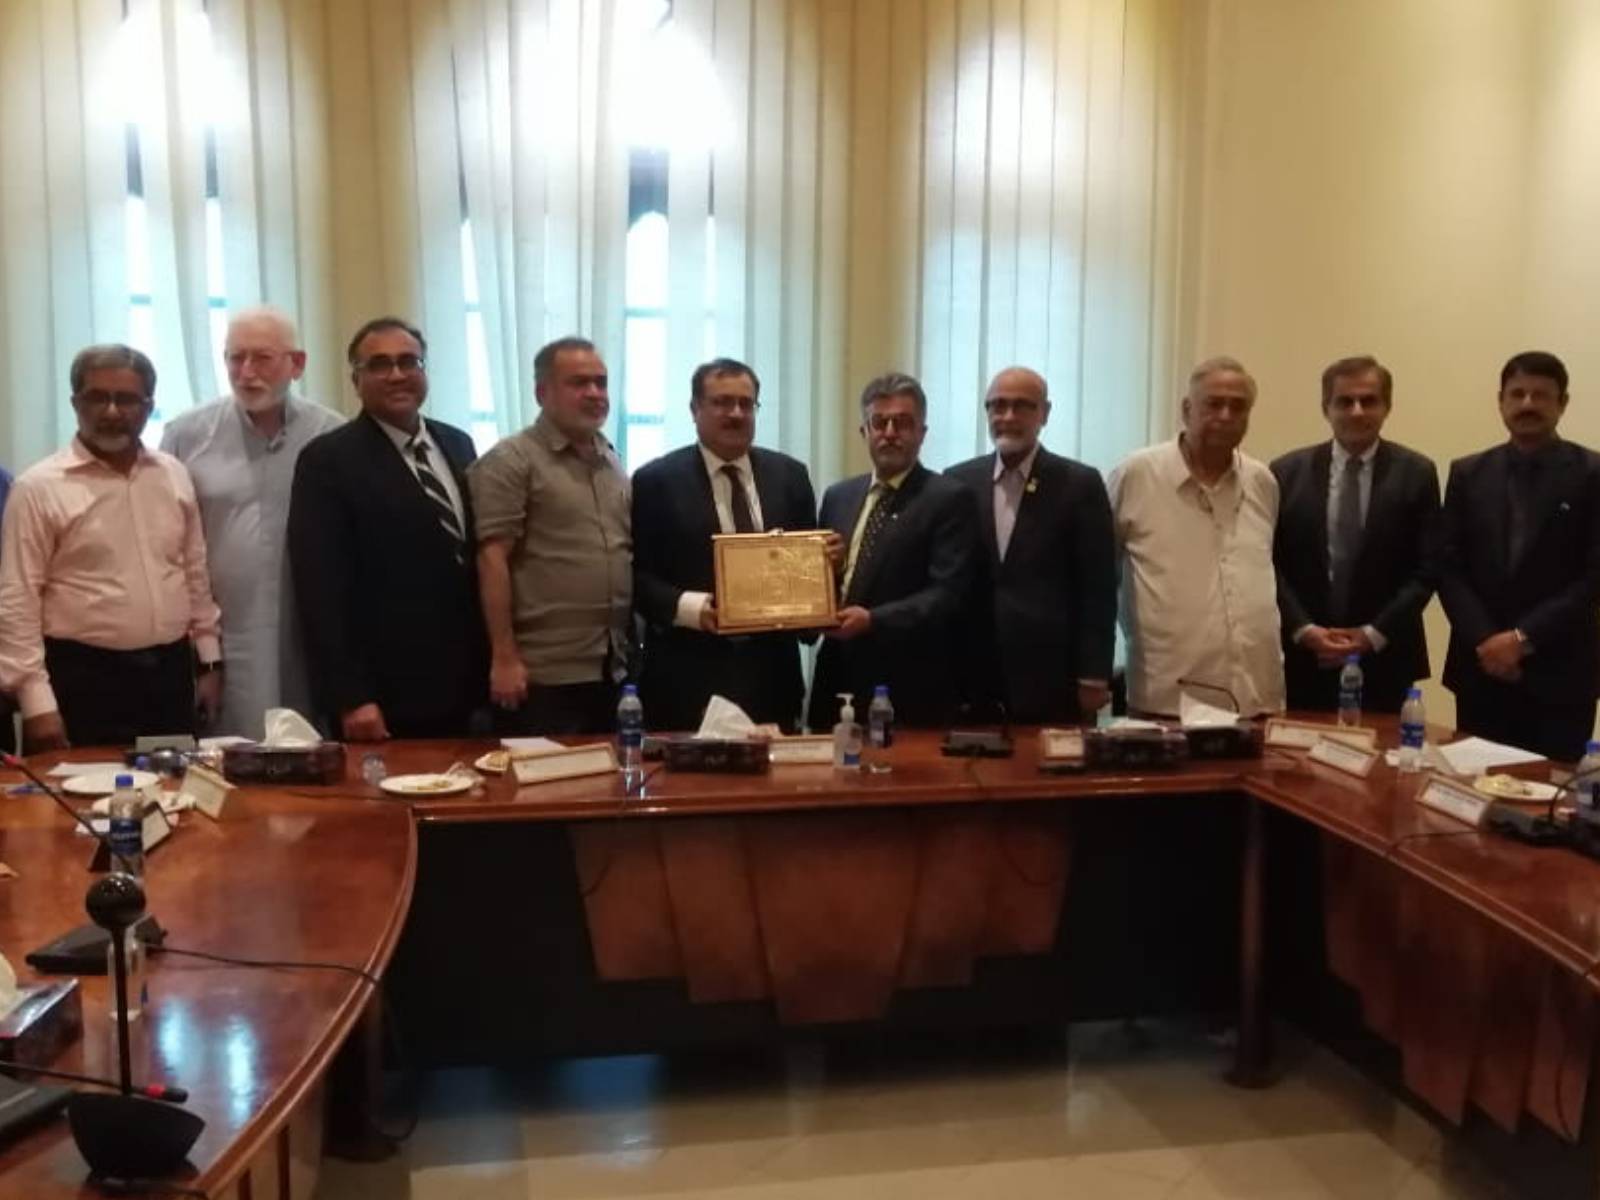 SRB team visited Karachi Chamber